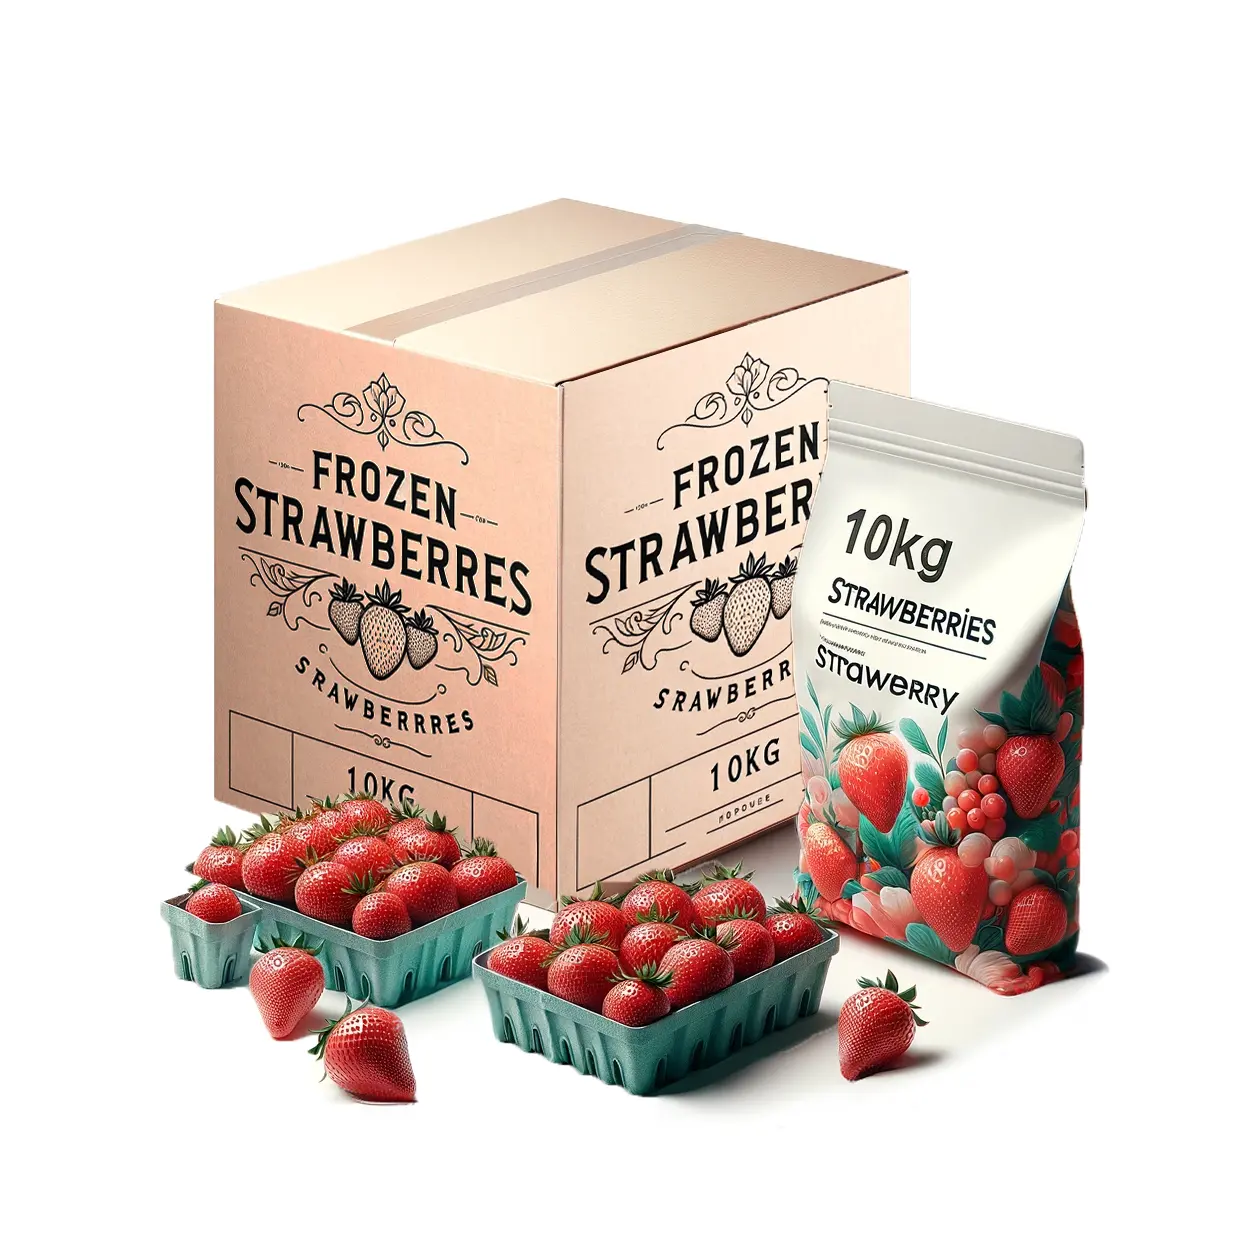 Atacado de morangos congelados IQF Premium melhor preço, ideal para sobremesas e assados